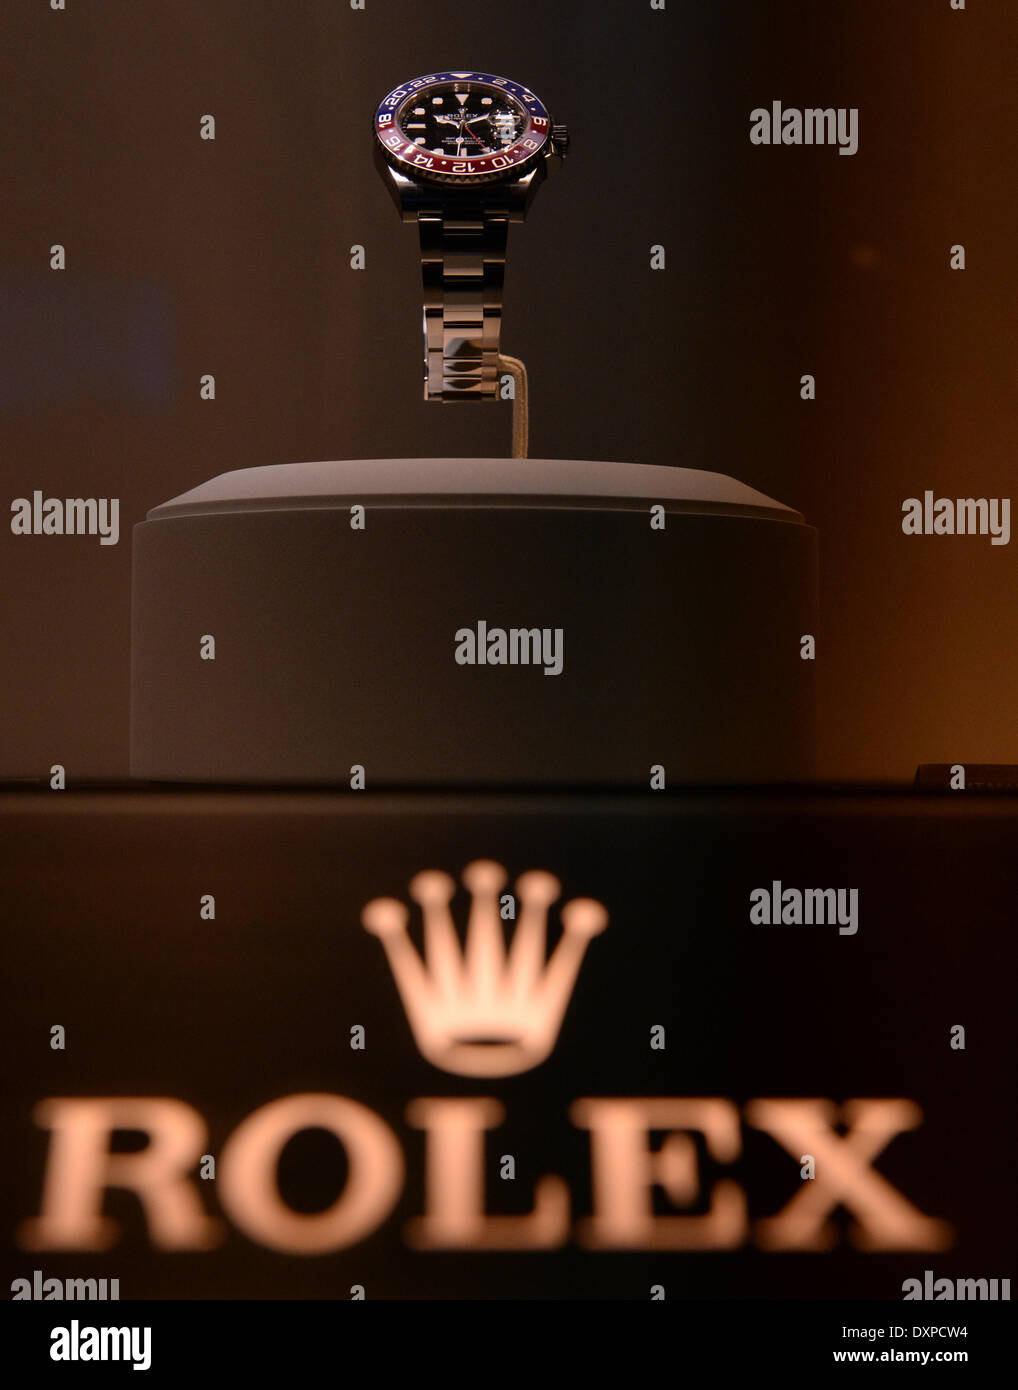 Basel, Schweiz. 28. März 2014. Der Uhren-Modell, die Uhrenmanufaktur Rolex  GMT-MASTER II ist auf dem Display an der internationalen Uhren- und  Schmuckindustrie Messe Baselworld 2014 in Basel, Schweiz, 28. März 2014. Um